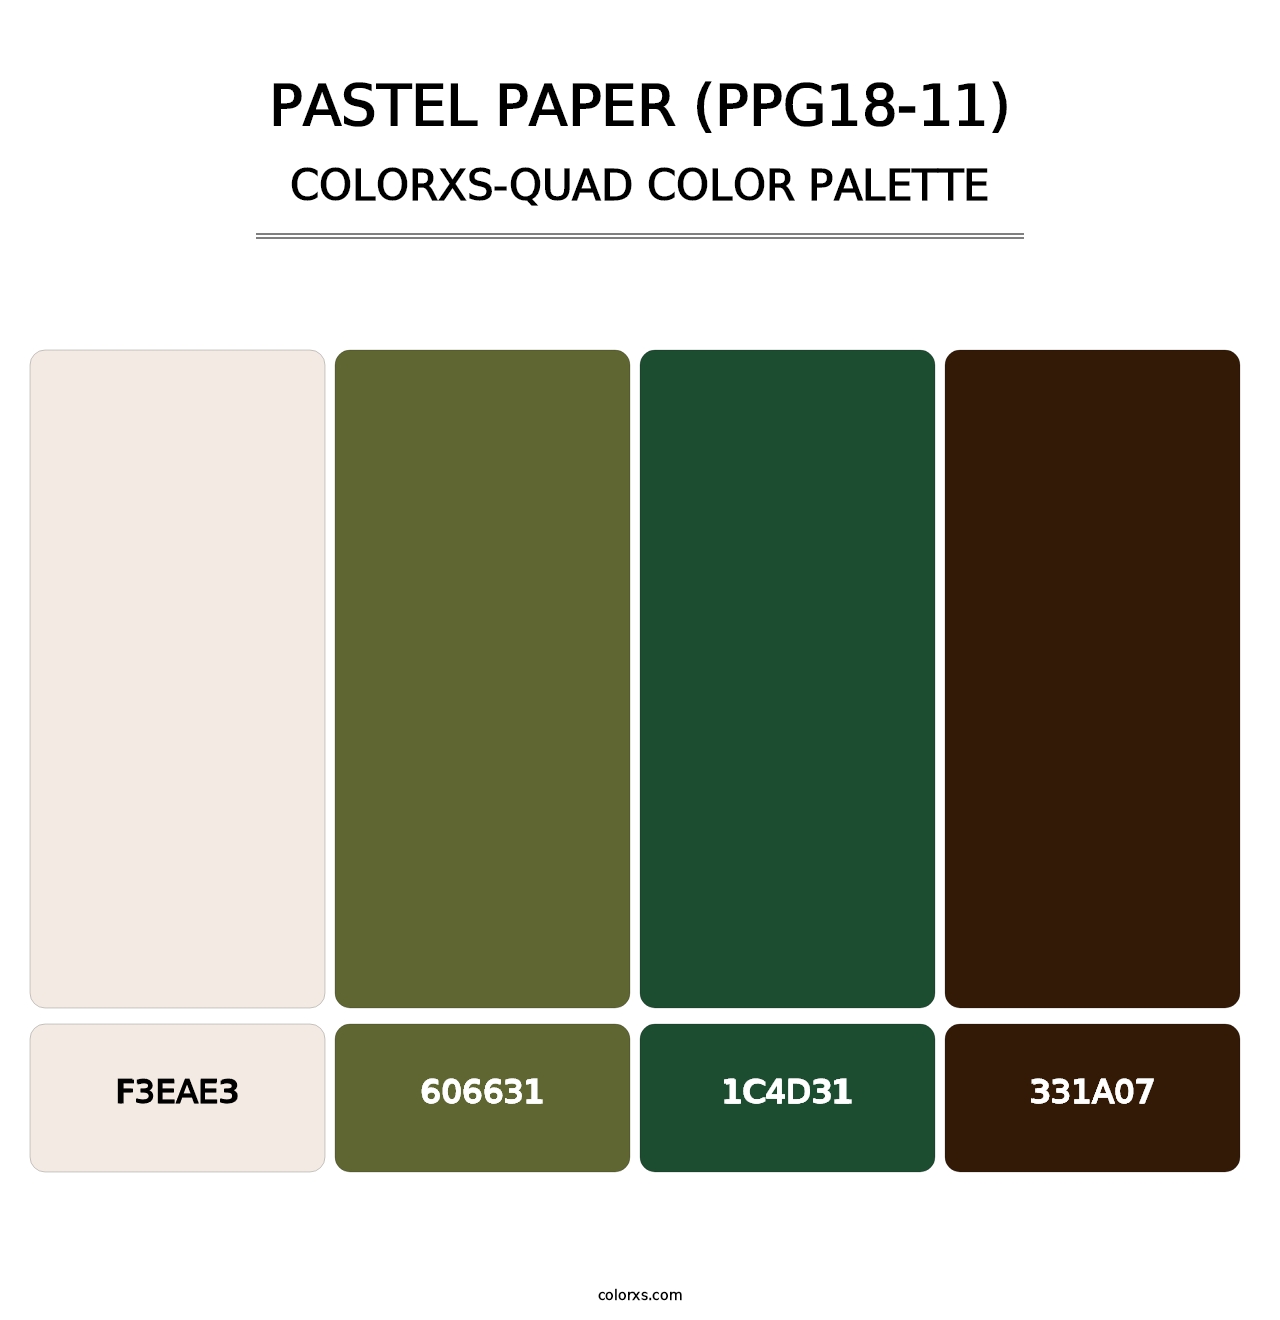 Pastel Paper (PPG18-11) - Colorxs Quad Palette